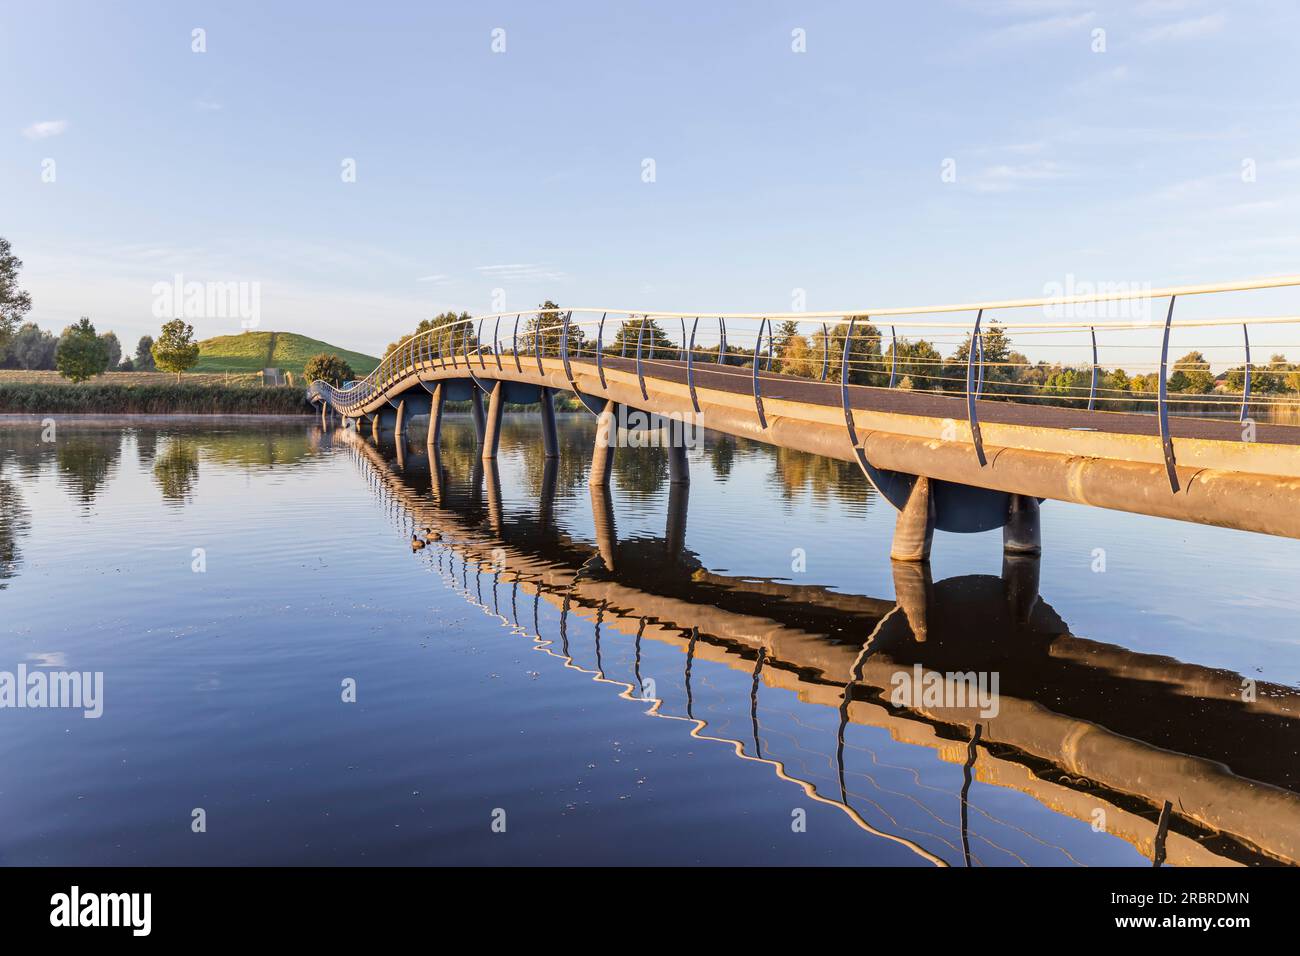 Barendrecht, the Netherlands - 2021-09-21: Bridge over Gaatkensplas in Barendrecht, the Netherlands, with a reflection in the water Stock Photo